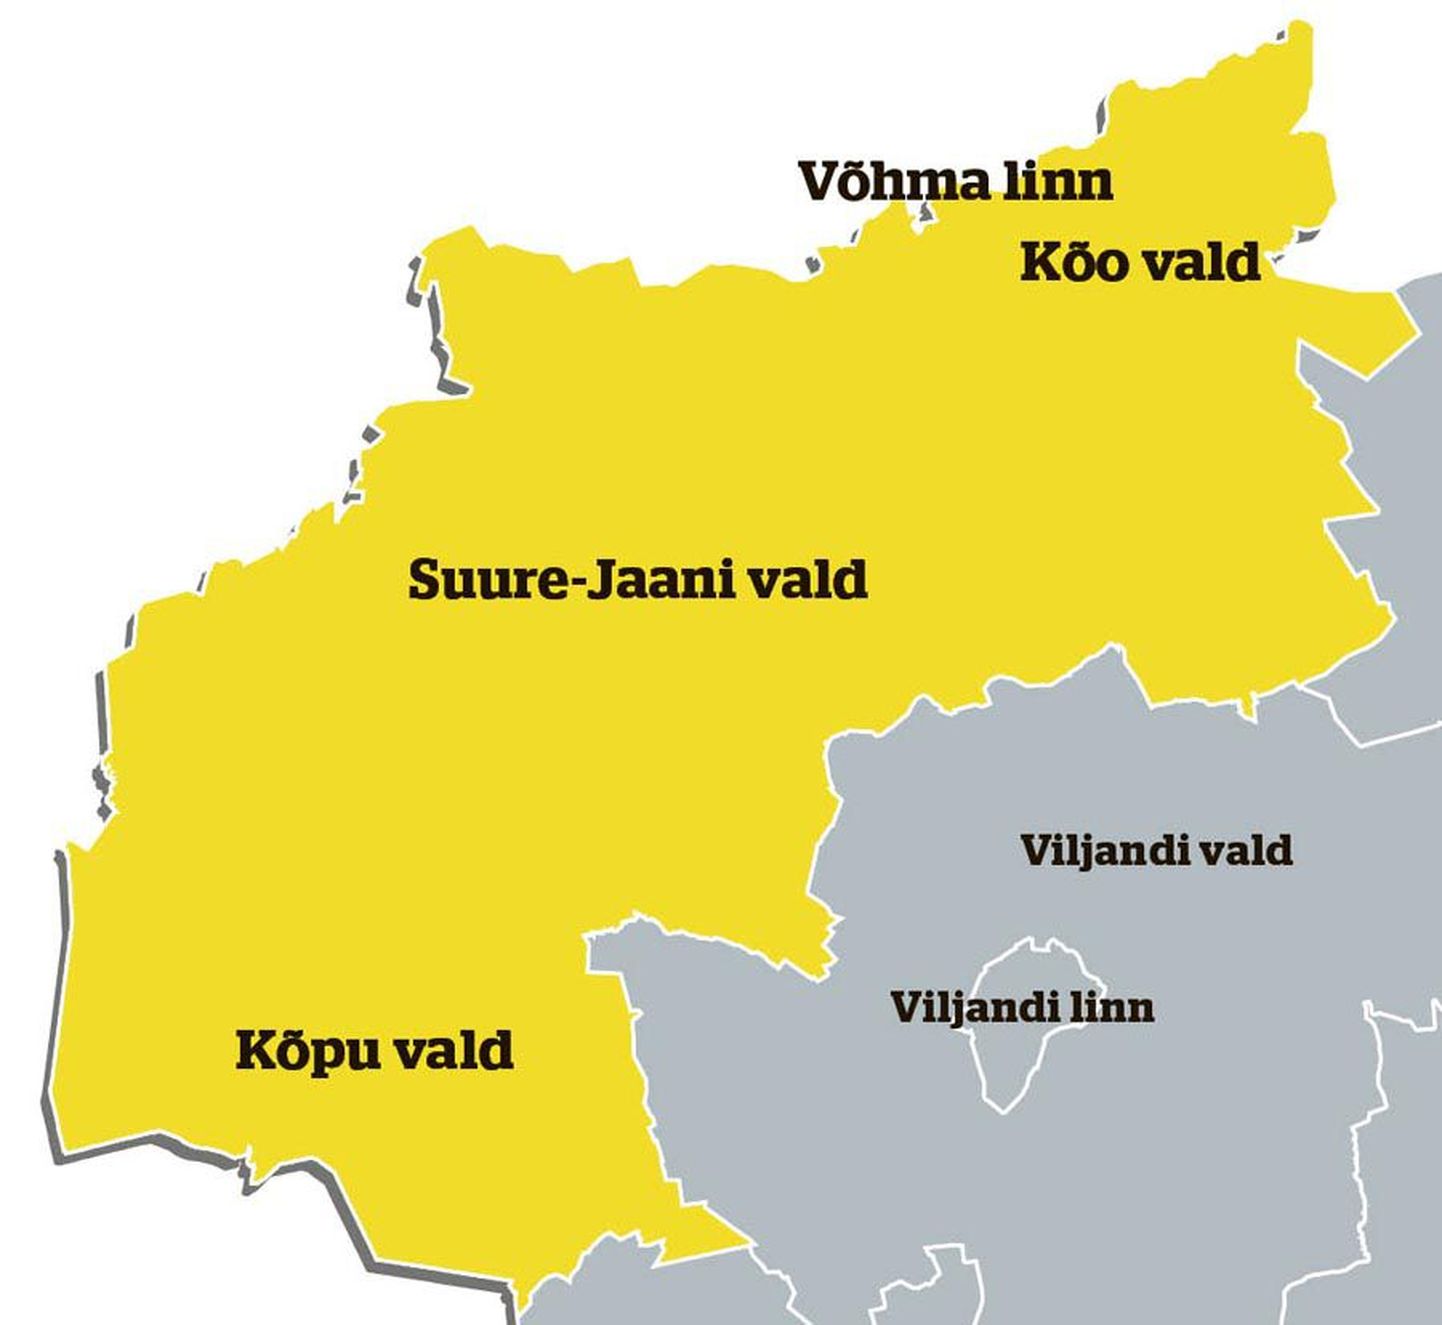 Nelja omavalitsuse juhid otsustasid, et Põhja-Viljandimaale tekib järgmiste valimiste järel uus vald nimega Põhja-Sakala, mis on kaardil näidatud kollasega.